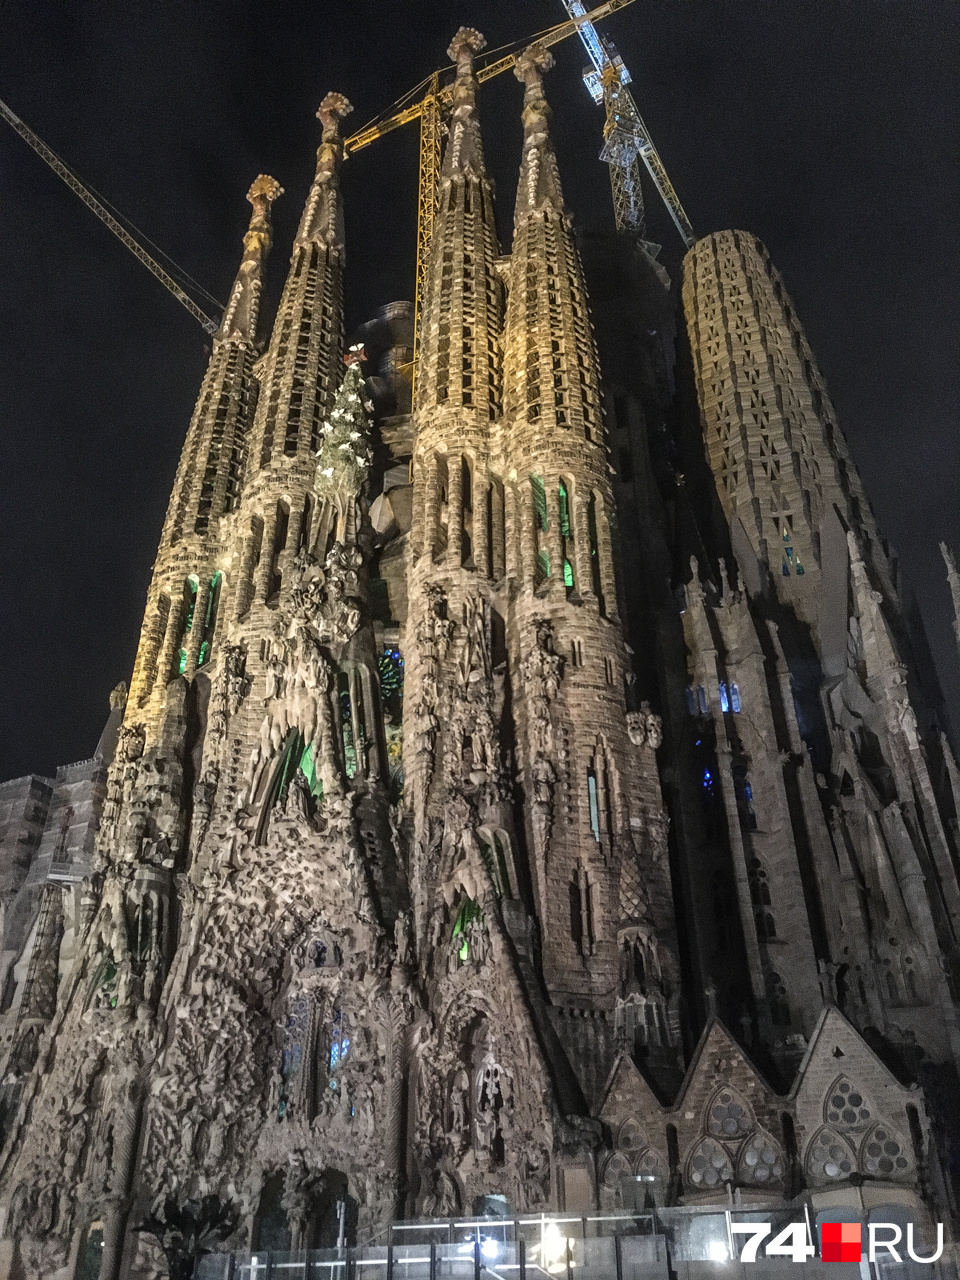 Наша первая цель: храм Sagrada Familia начали строить в 1882 году, а закончат, предположительно, в 2026 году, через сто лет после смерти Антонио Гауди